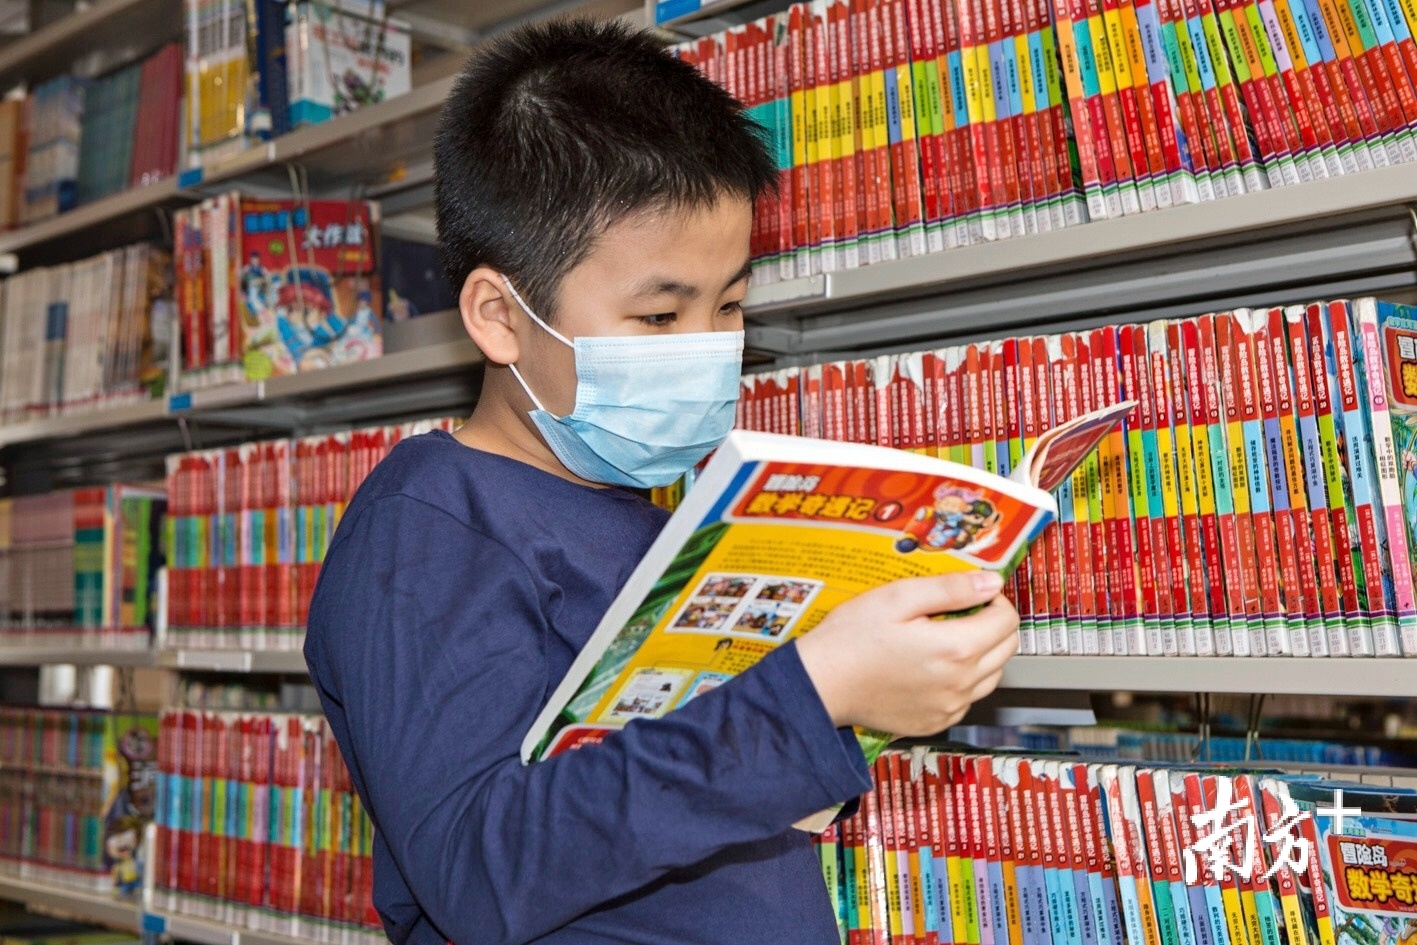 广州图书馆的儿童书籍，吸引了很多小朋友。